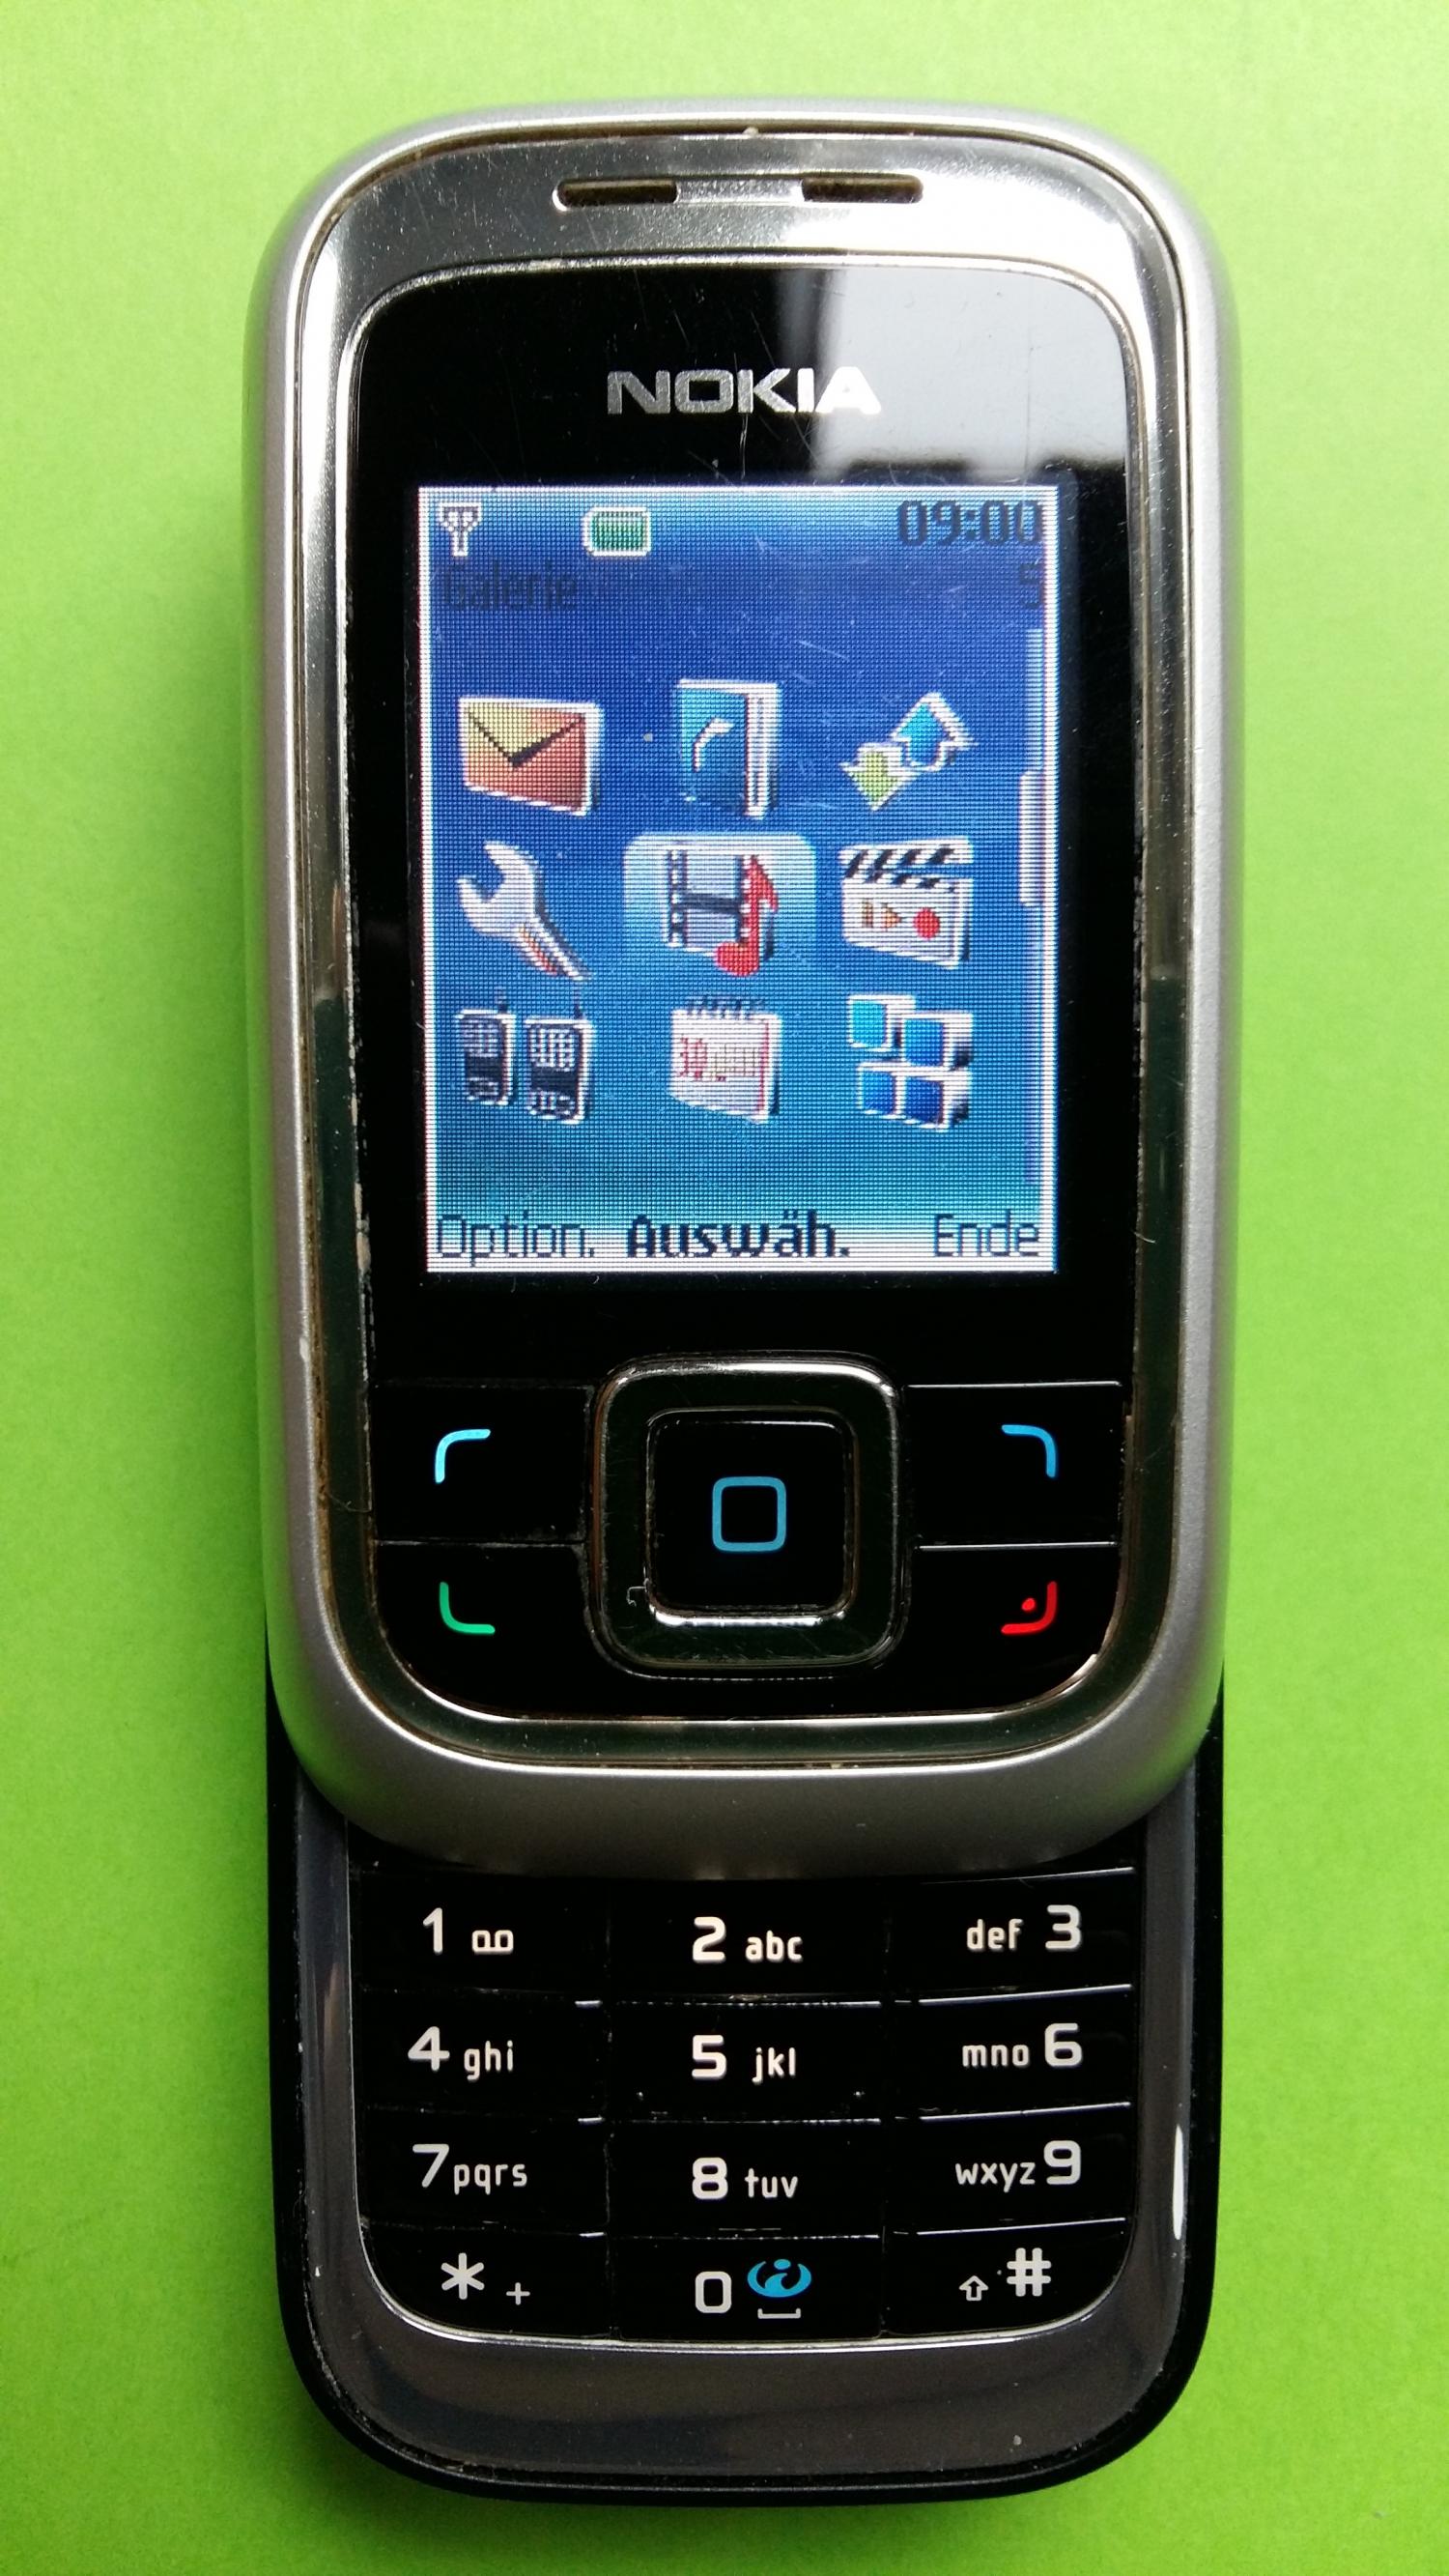 image-7305079-Nokia 6111 (1)2.jpg